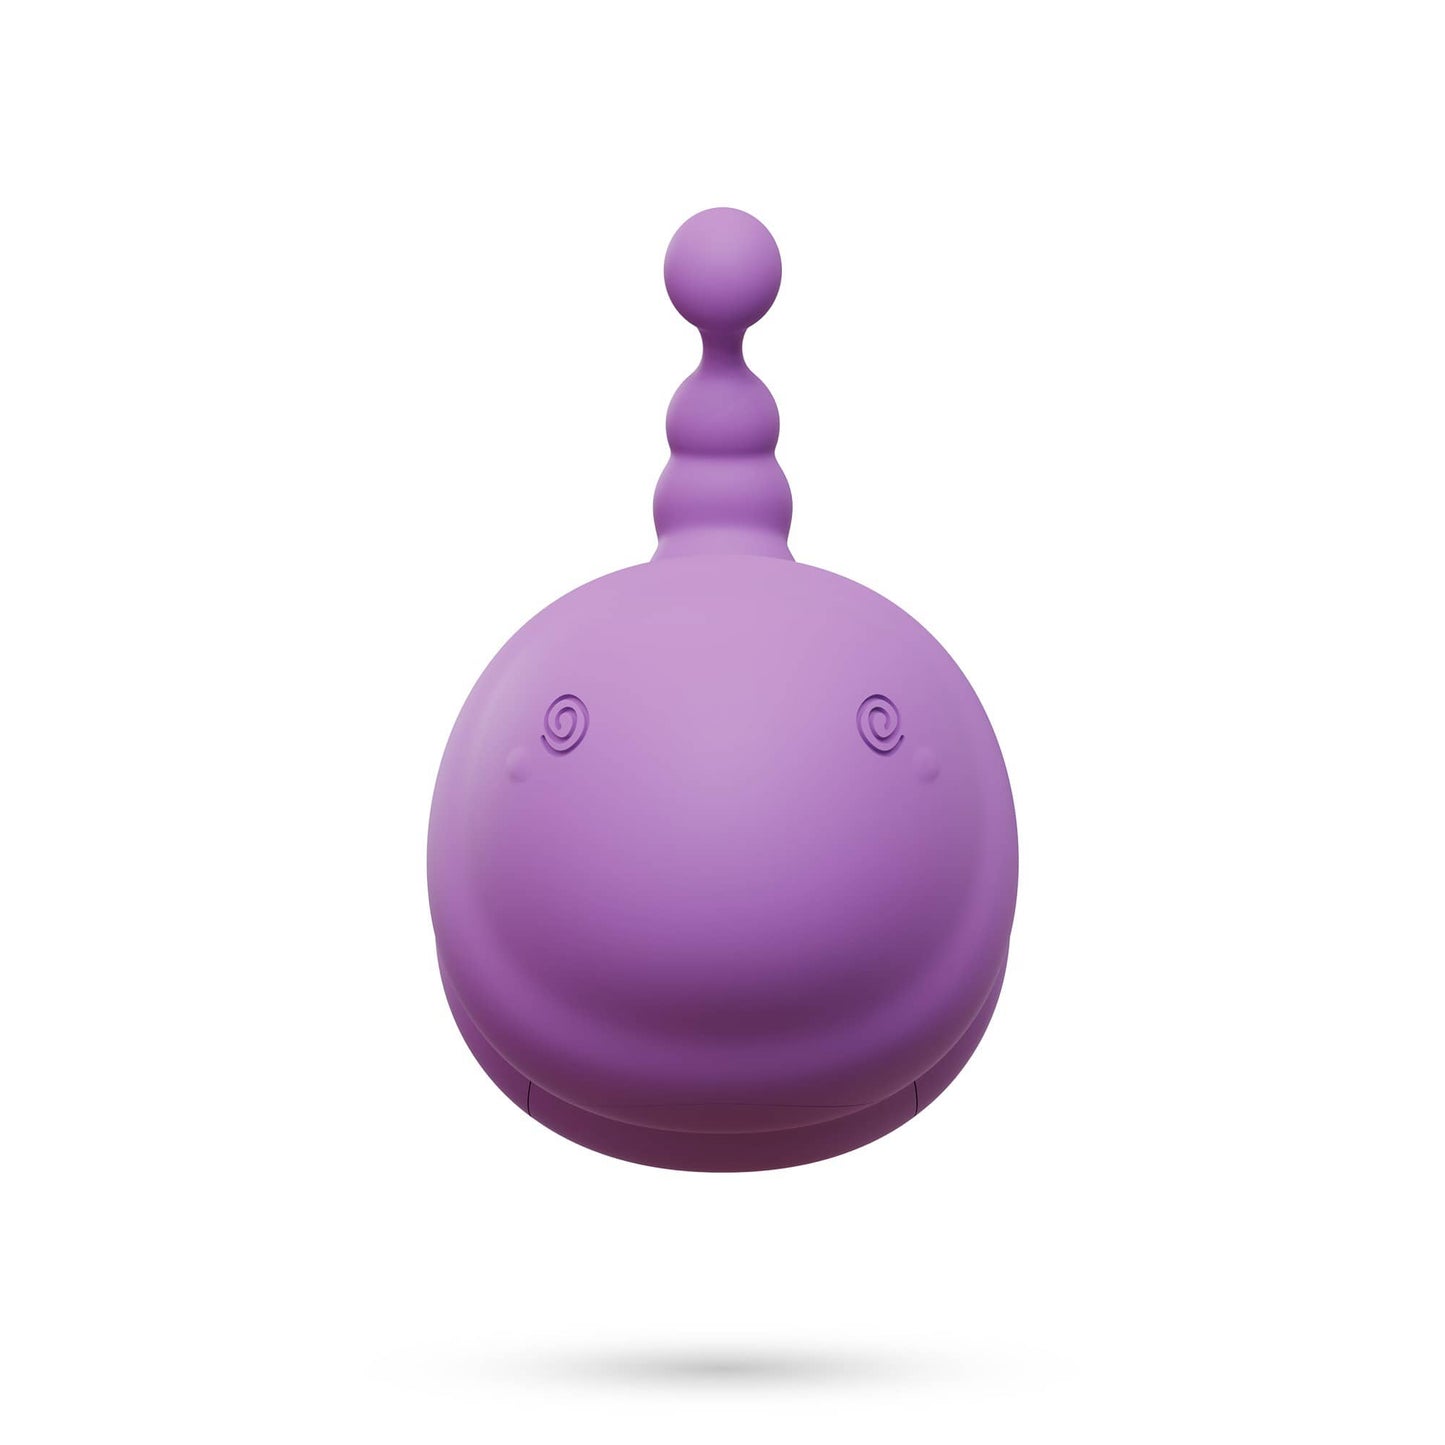 Este huevo vibrador recargable te ofrece 9 potentes modos de vibración que apuntarán a tu Punto G como ningún otro.